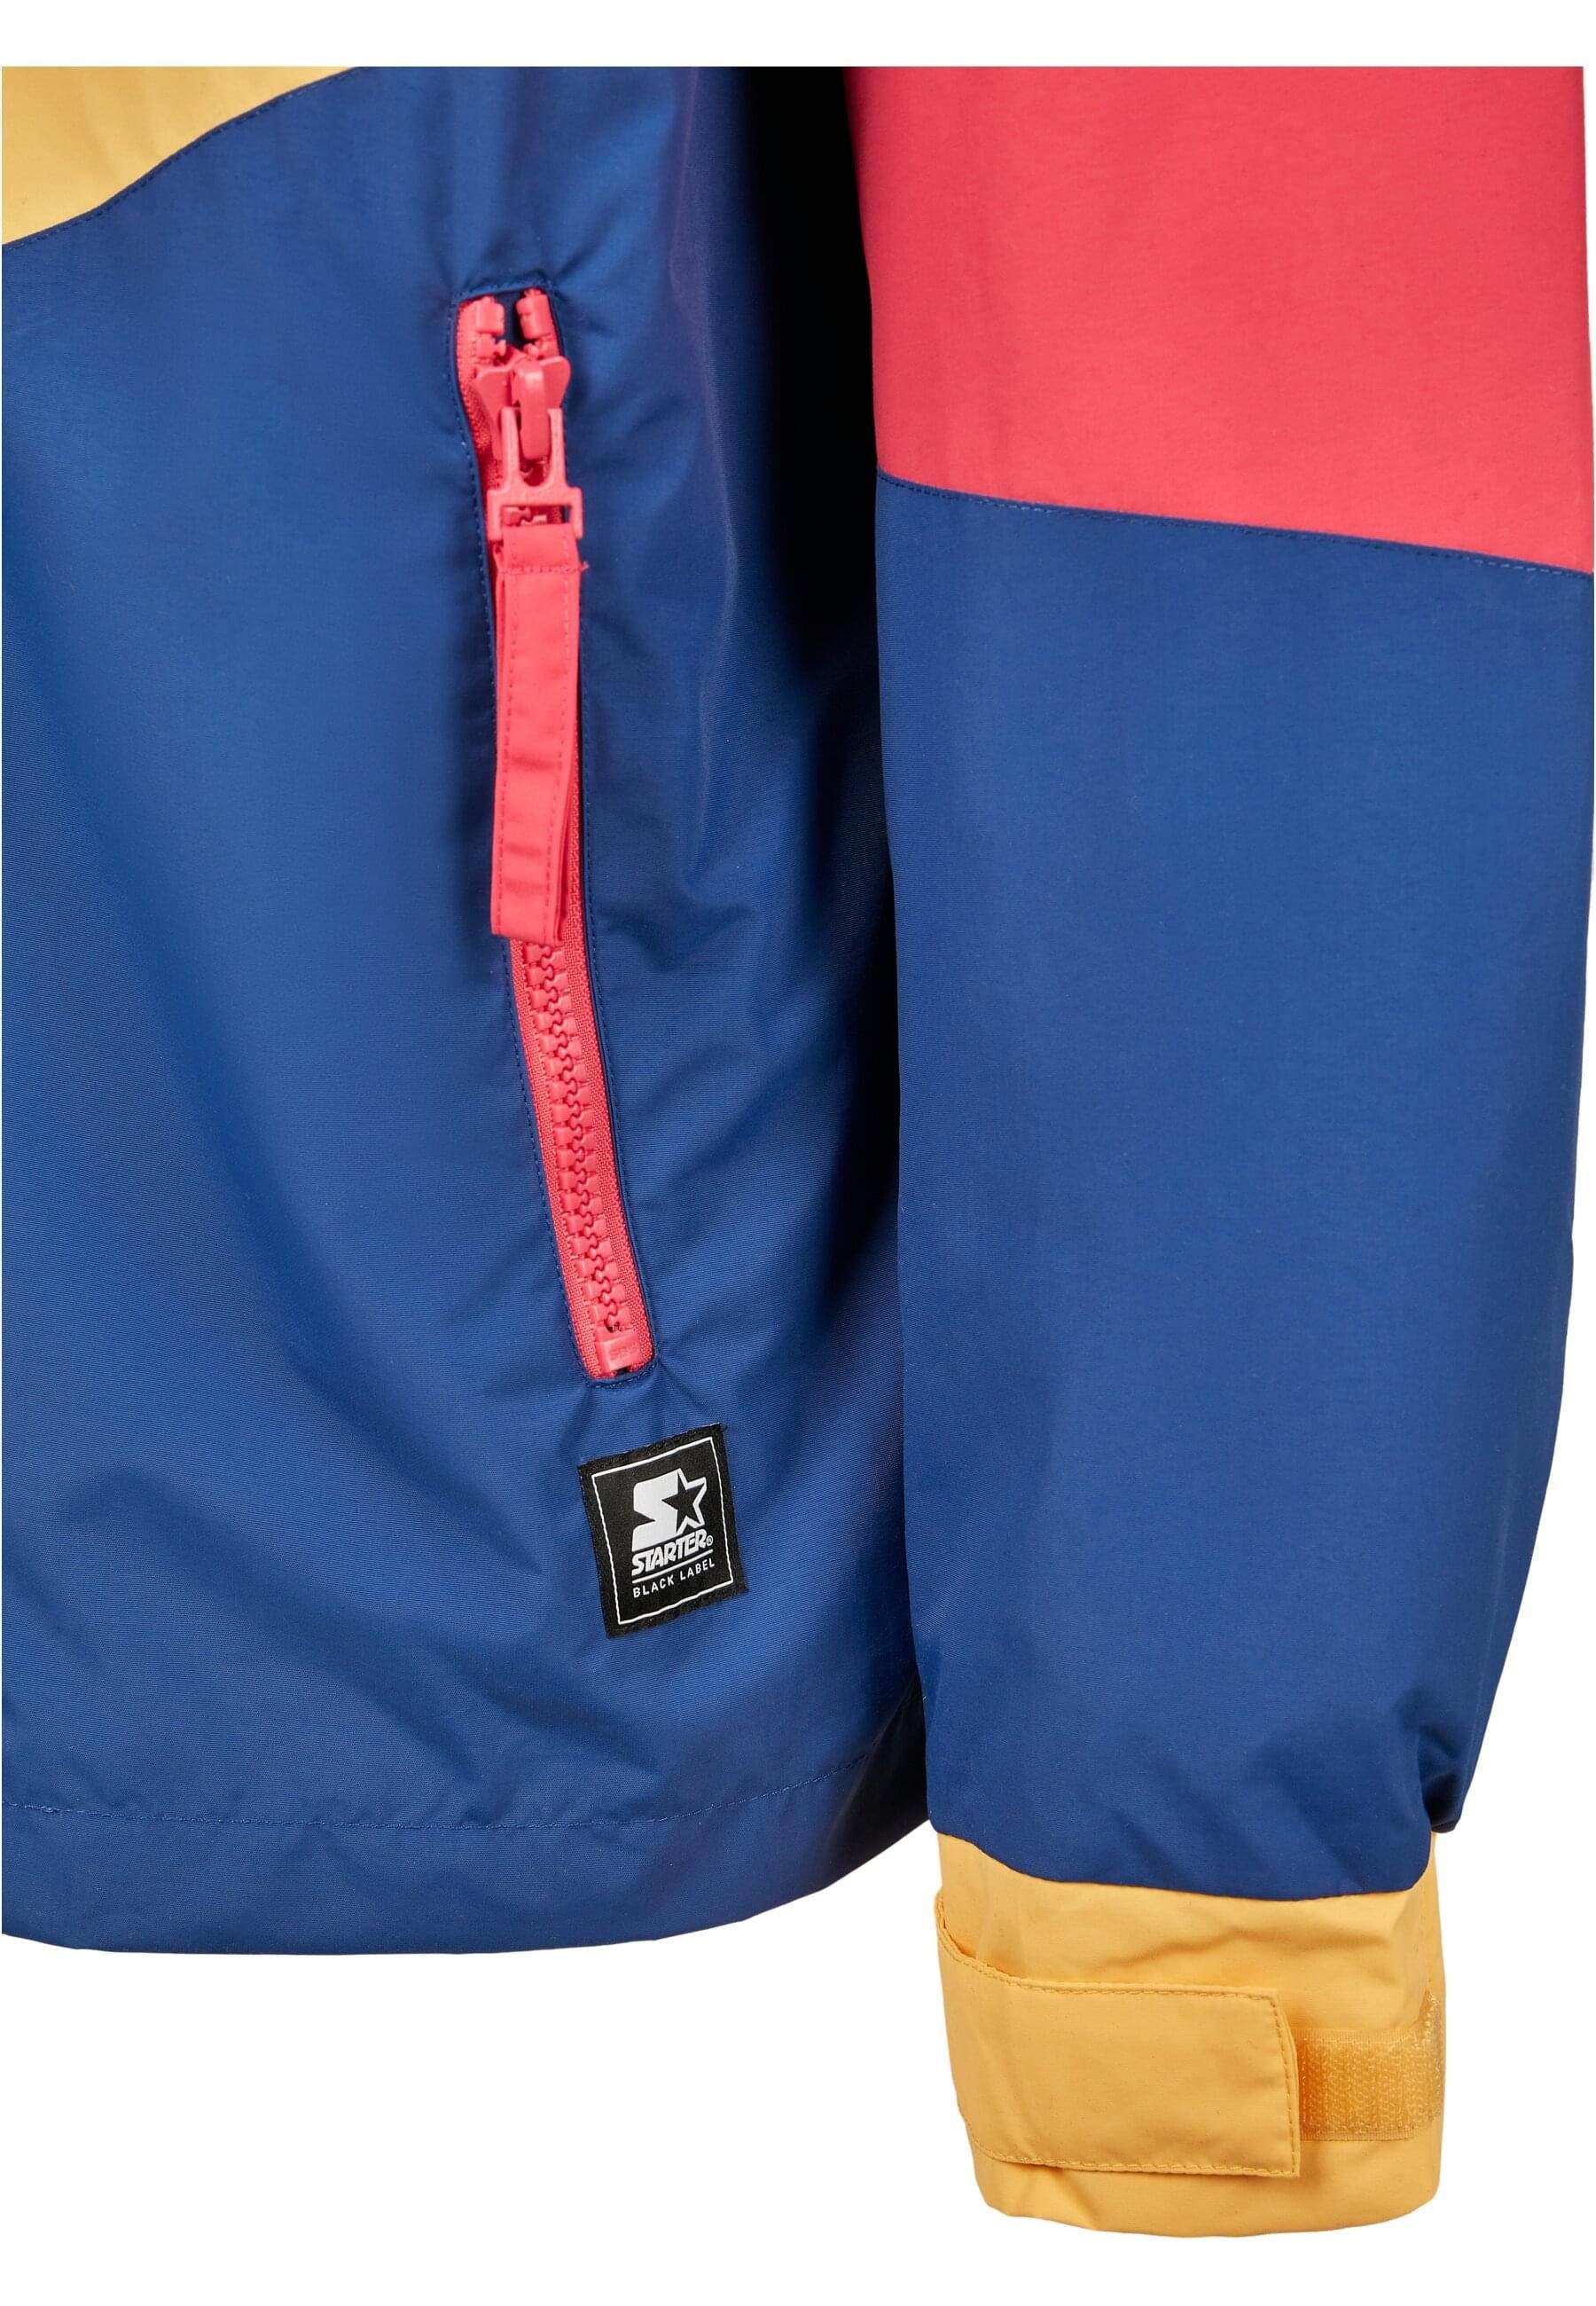 (1-St) Starter Starter Jacket Sommerjacke Logo Multicolored Herren